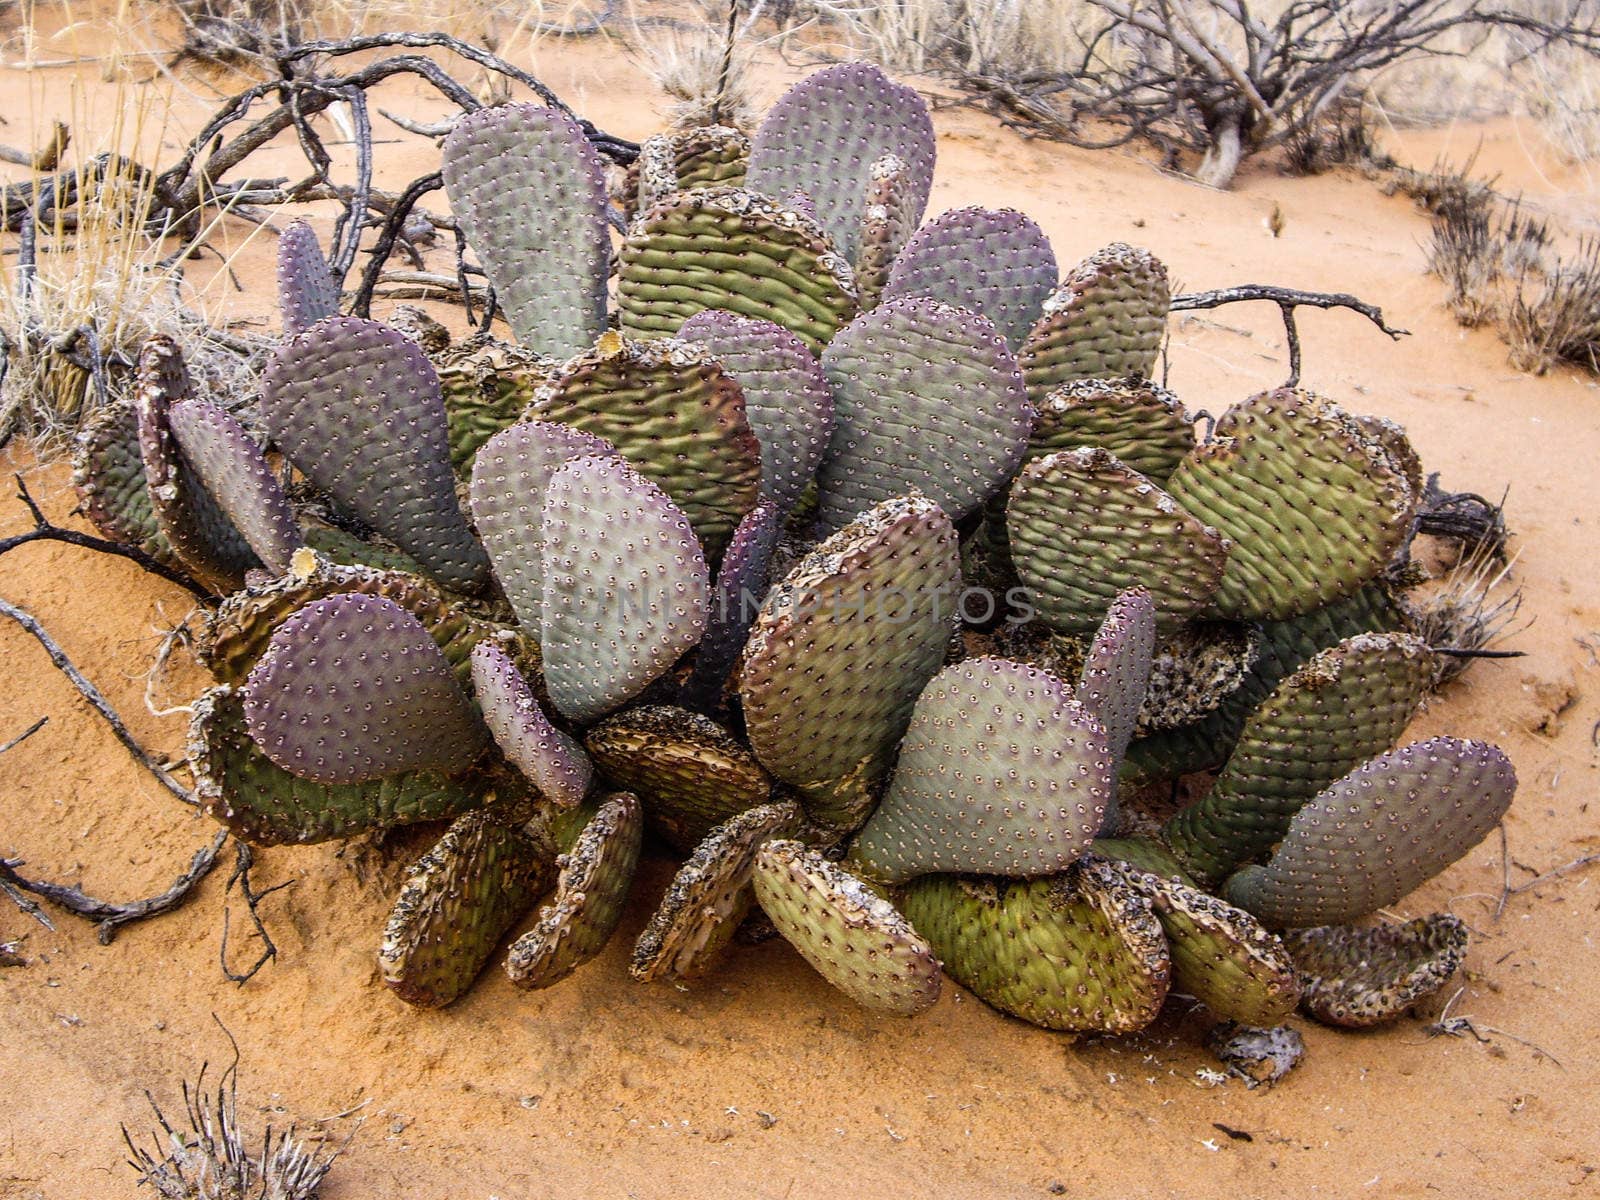 Cactus in the Nevada desert